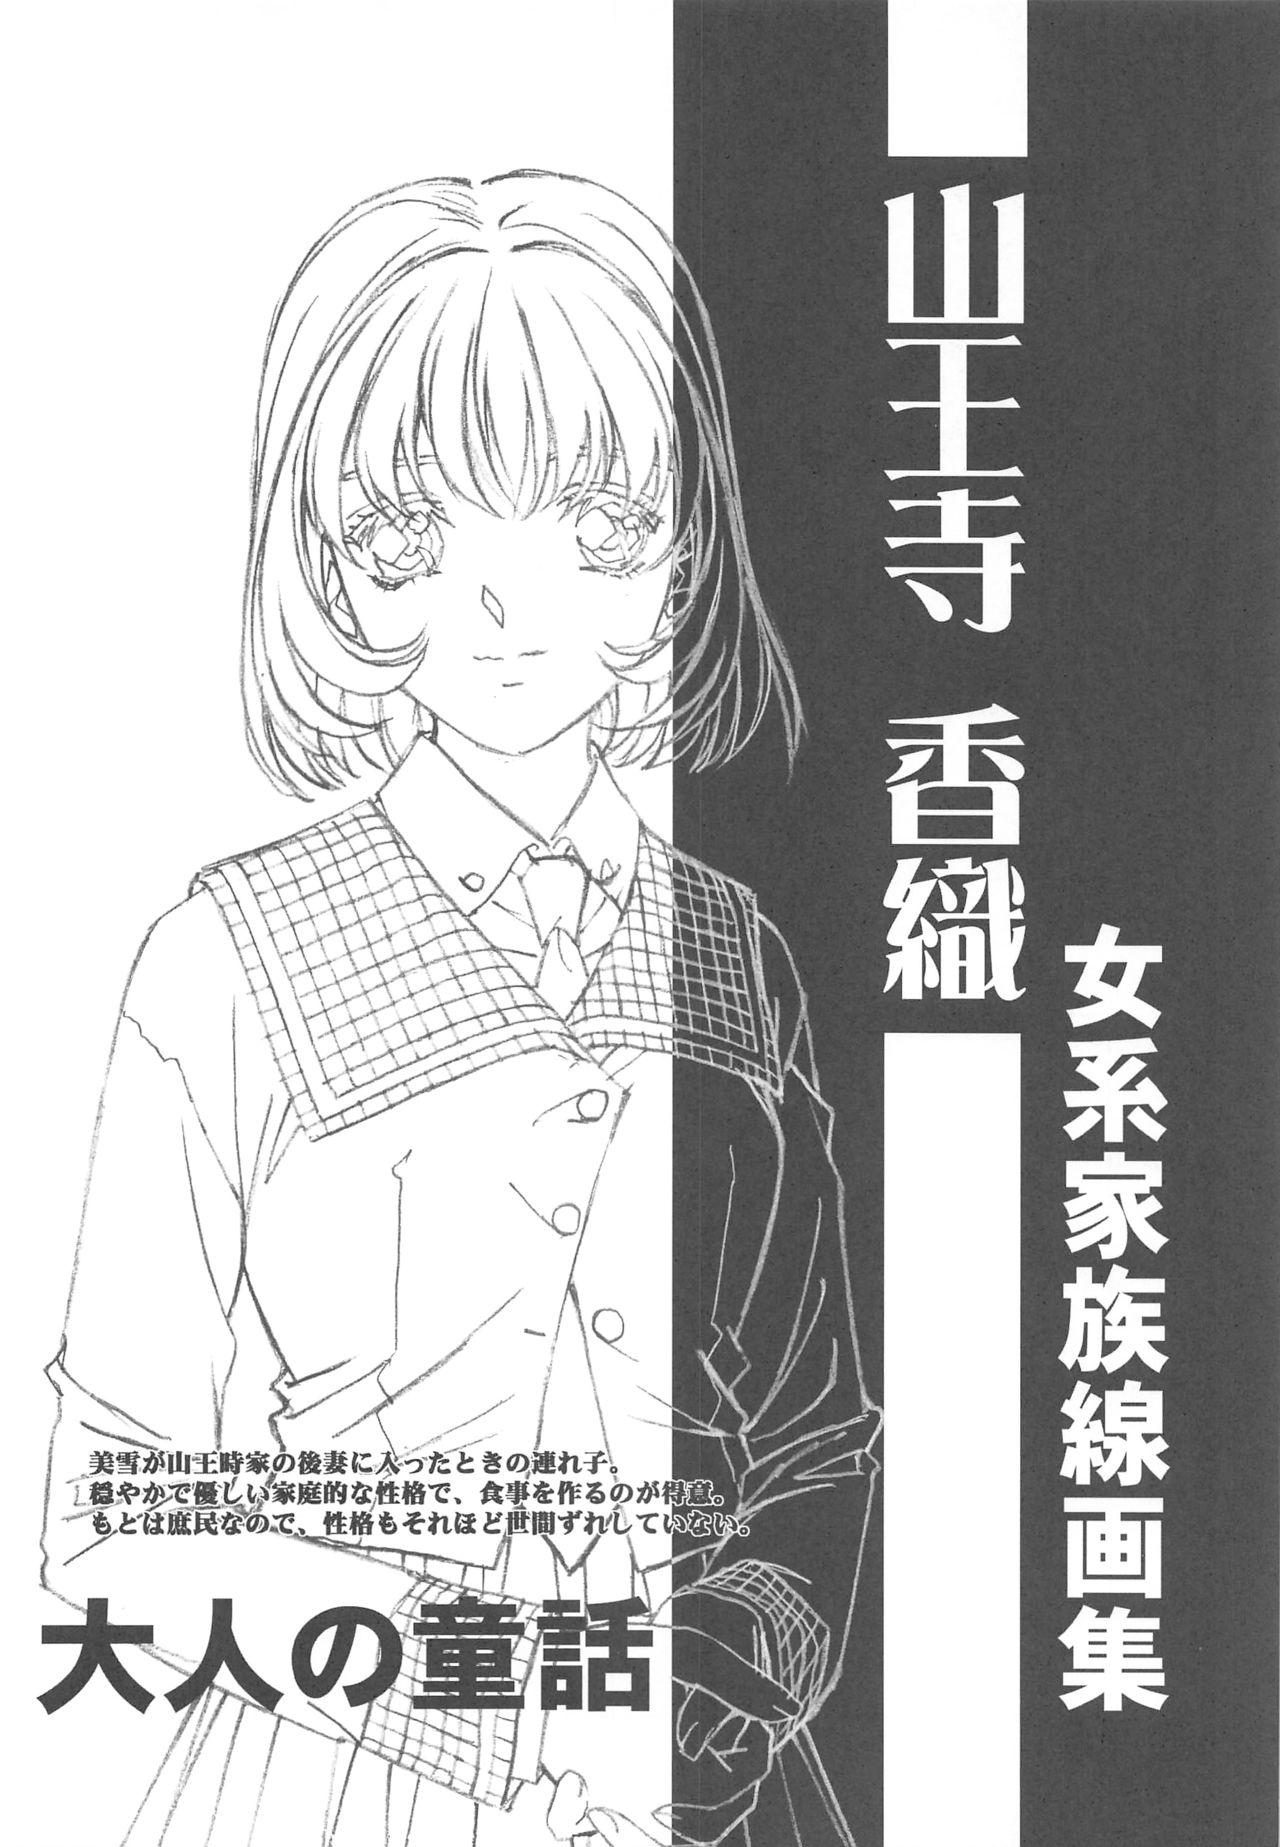 Otonano Do-wa Vol. 14 & Jokei Kazoku Senga shuu 106